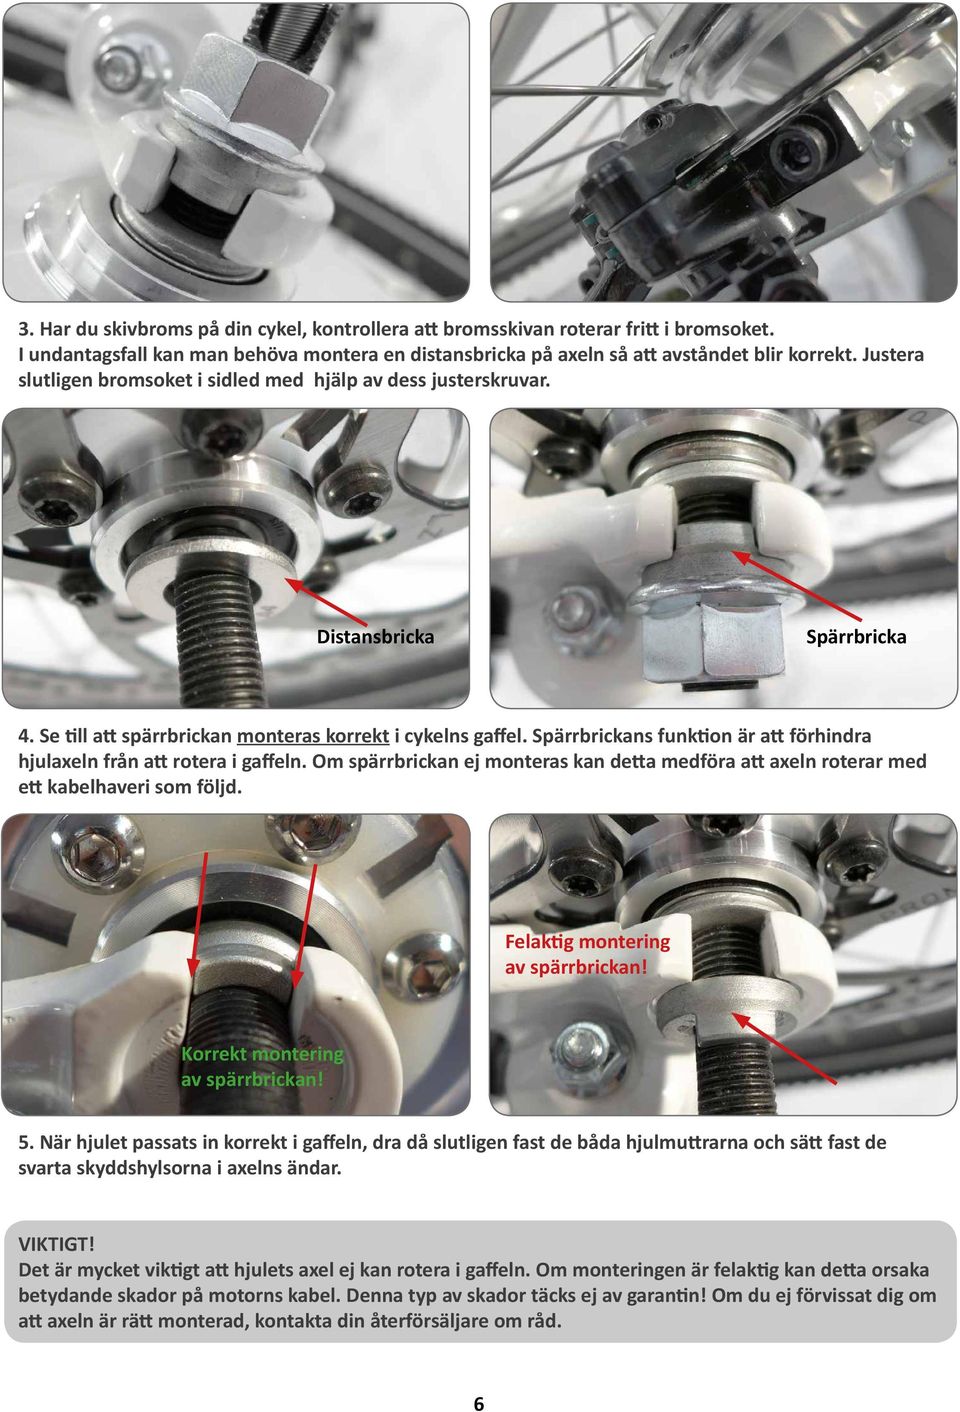 Spärrbrickans funktion är att förhindra hjulaxeln från att rotera i gaffeln. Om spärrbrickan ej monteras kan detta medföra att axeln roterar med ett kabelhaveri som följd.